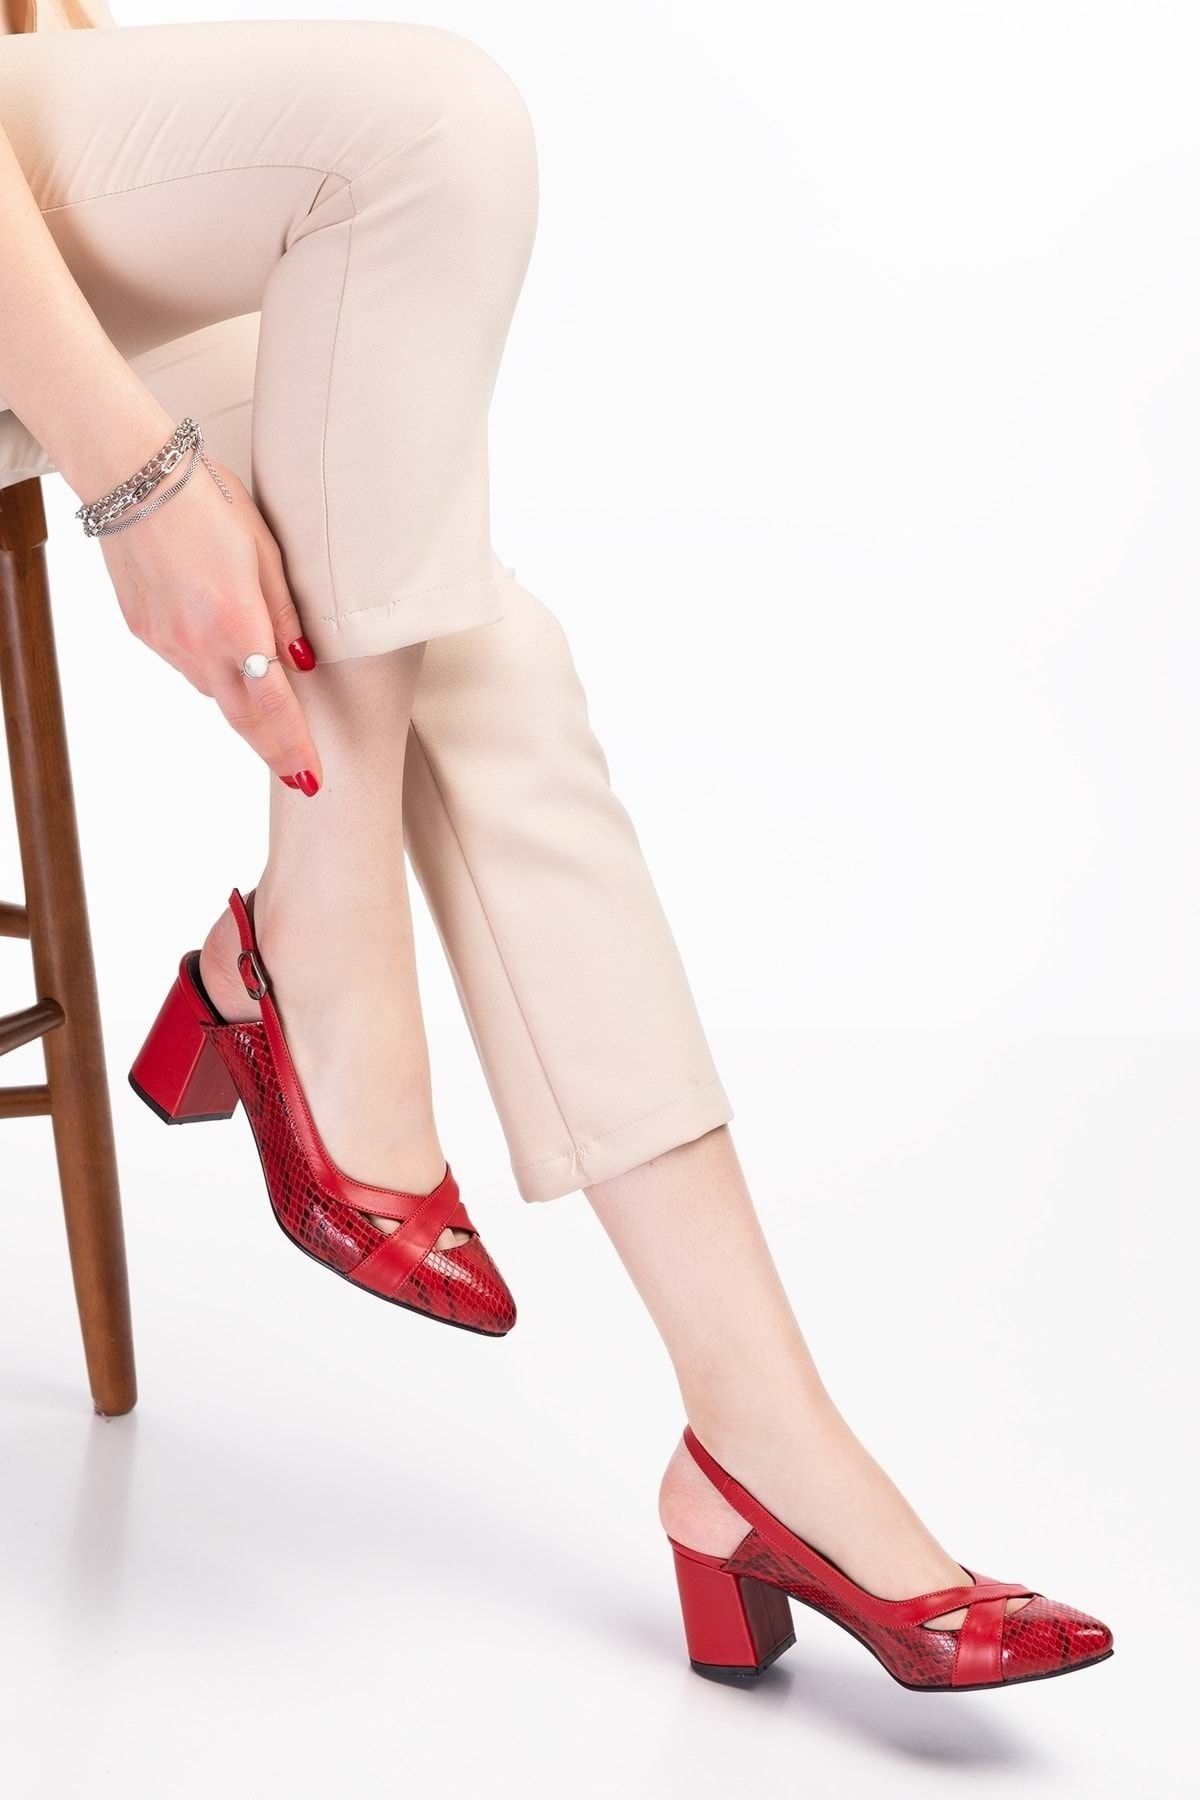 Gondol Hakiki Deri Yılan Desen Ayrıntılı Topuklu Ayakkabı Şhn.0738 - Kırmızı Yılan- 40